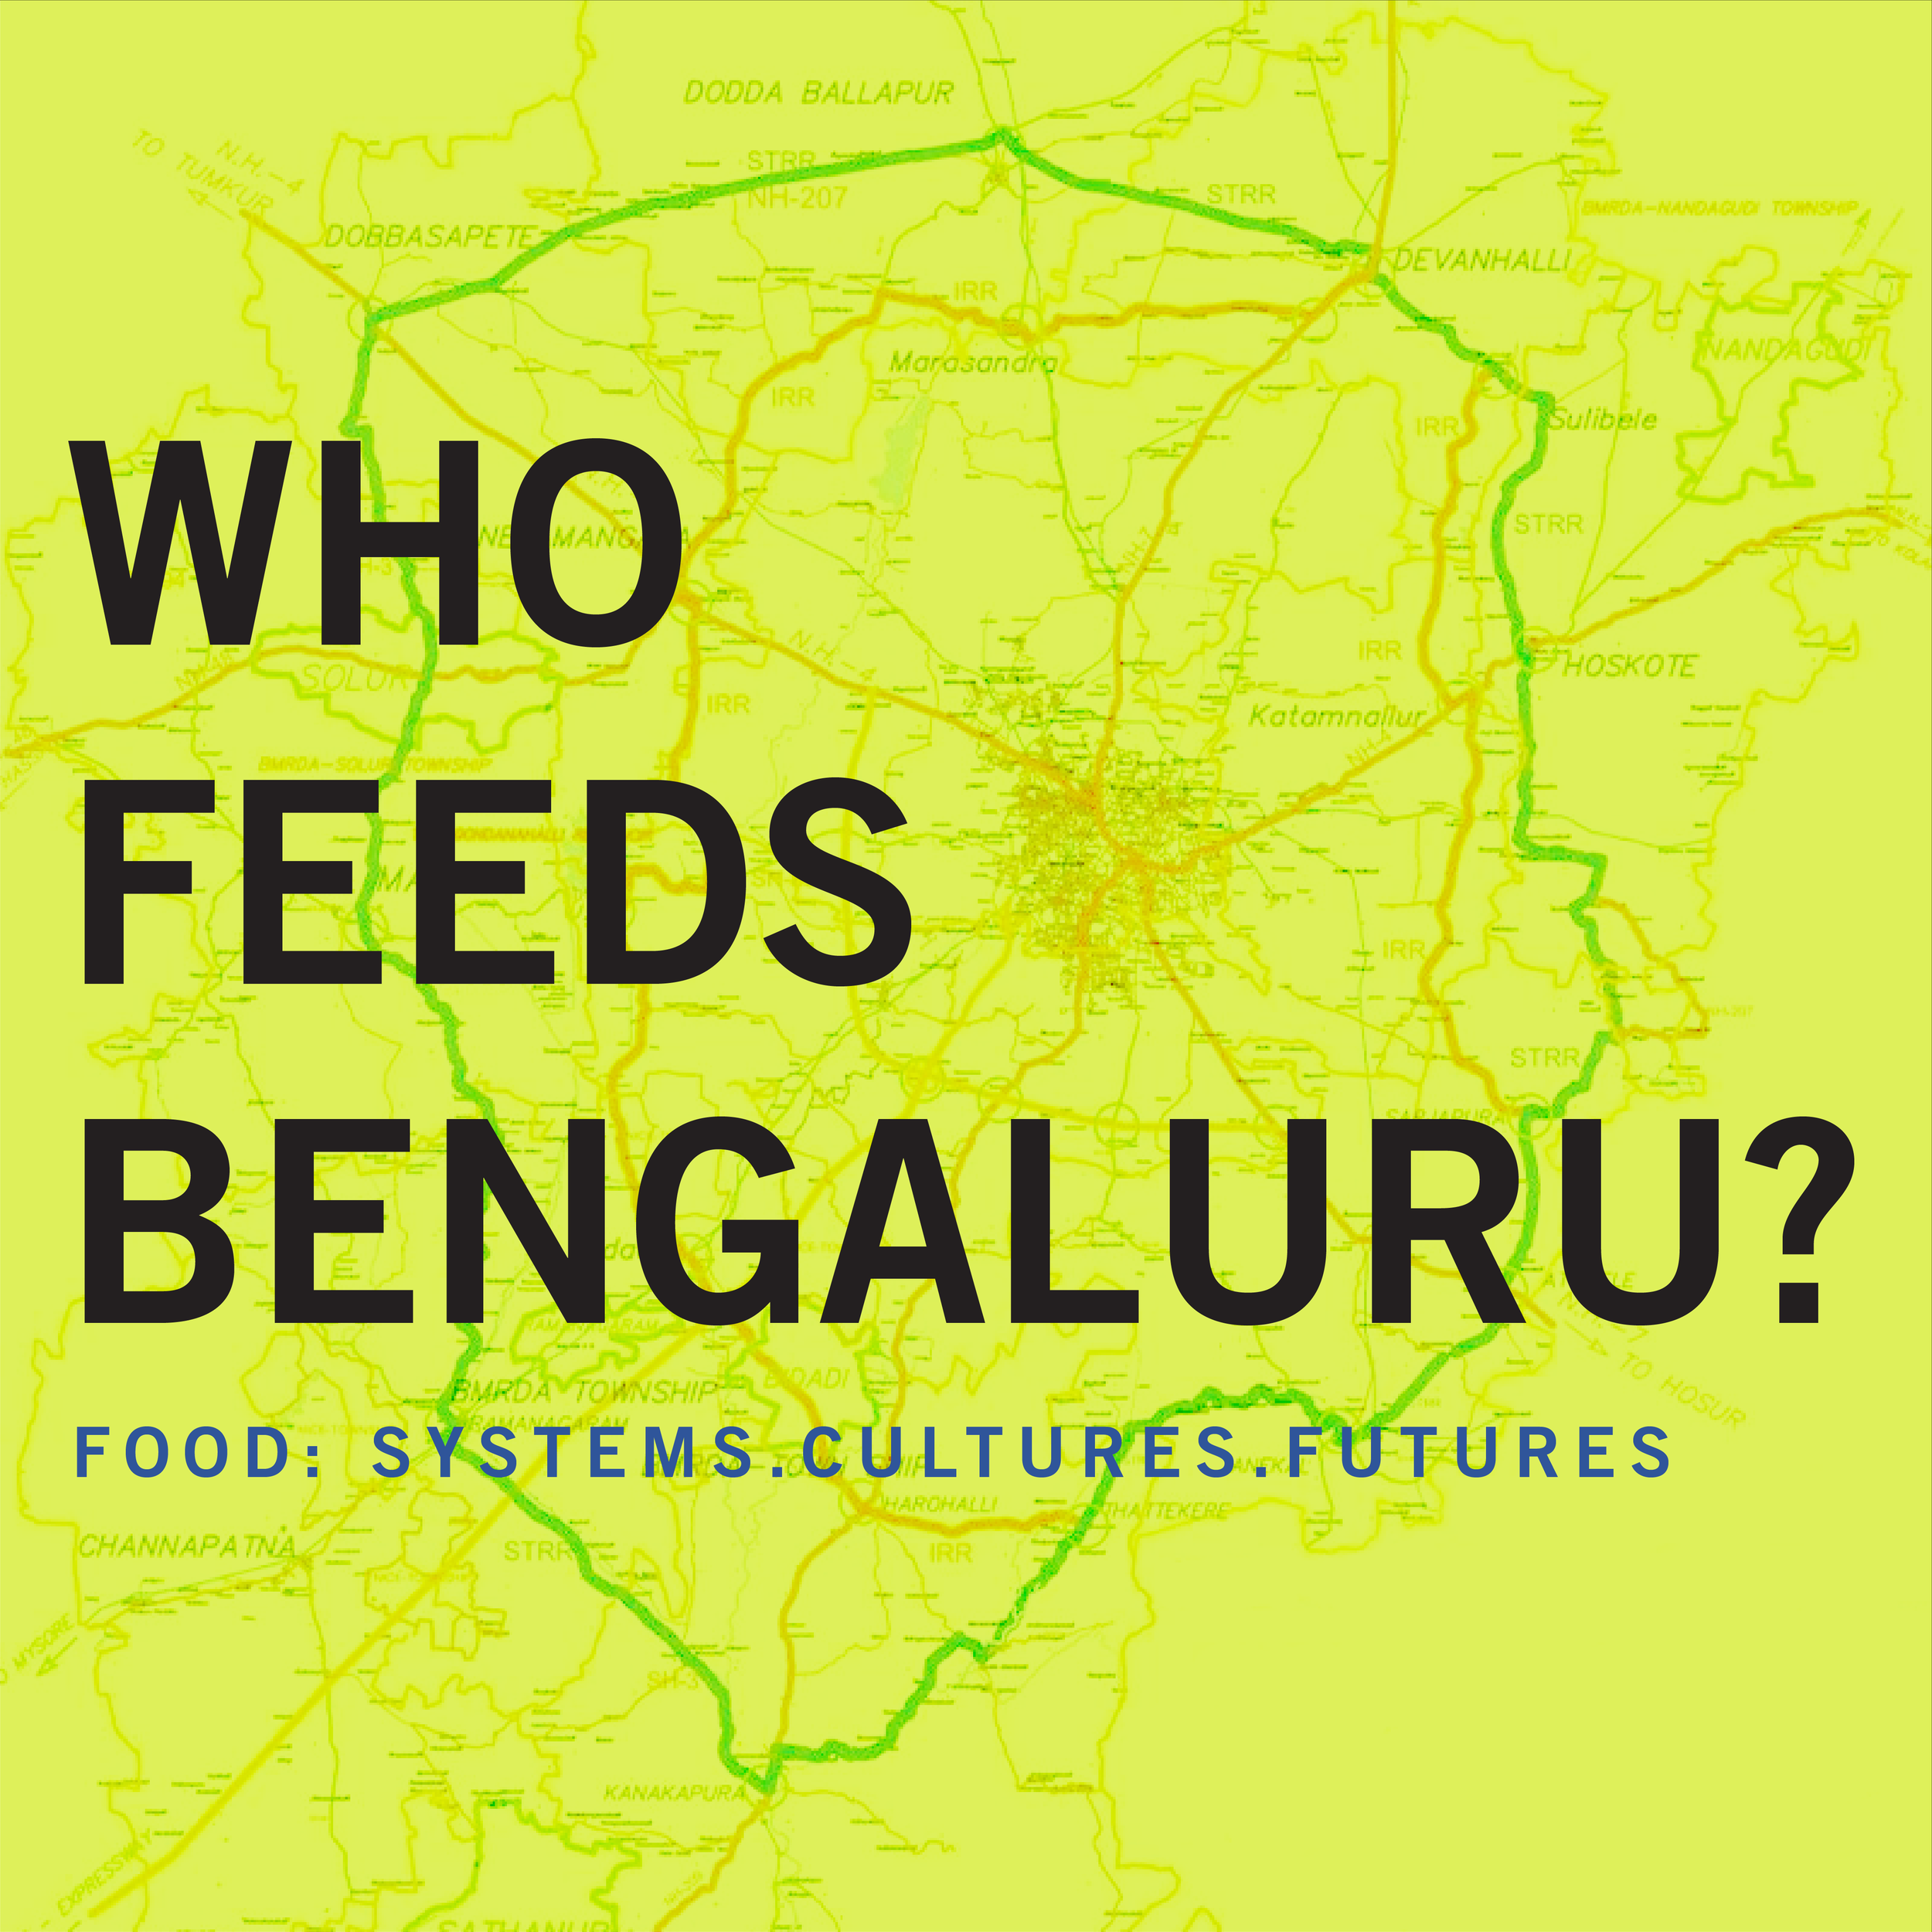 WHO FEEDS BENGALURU?